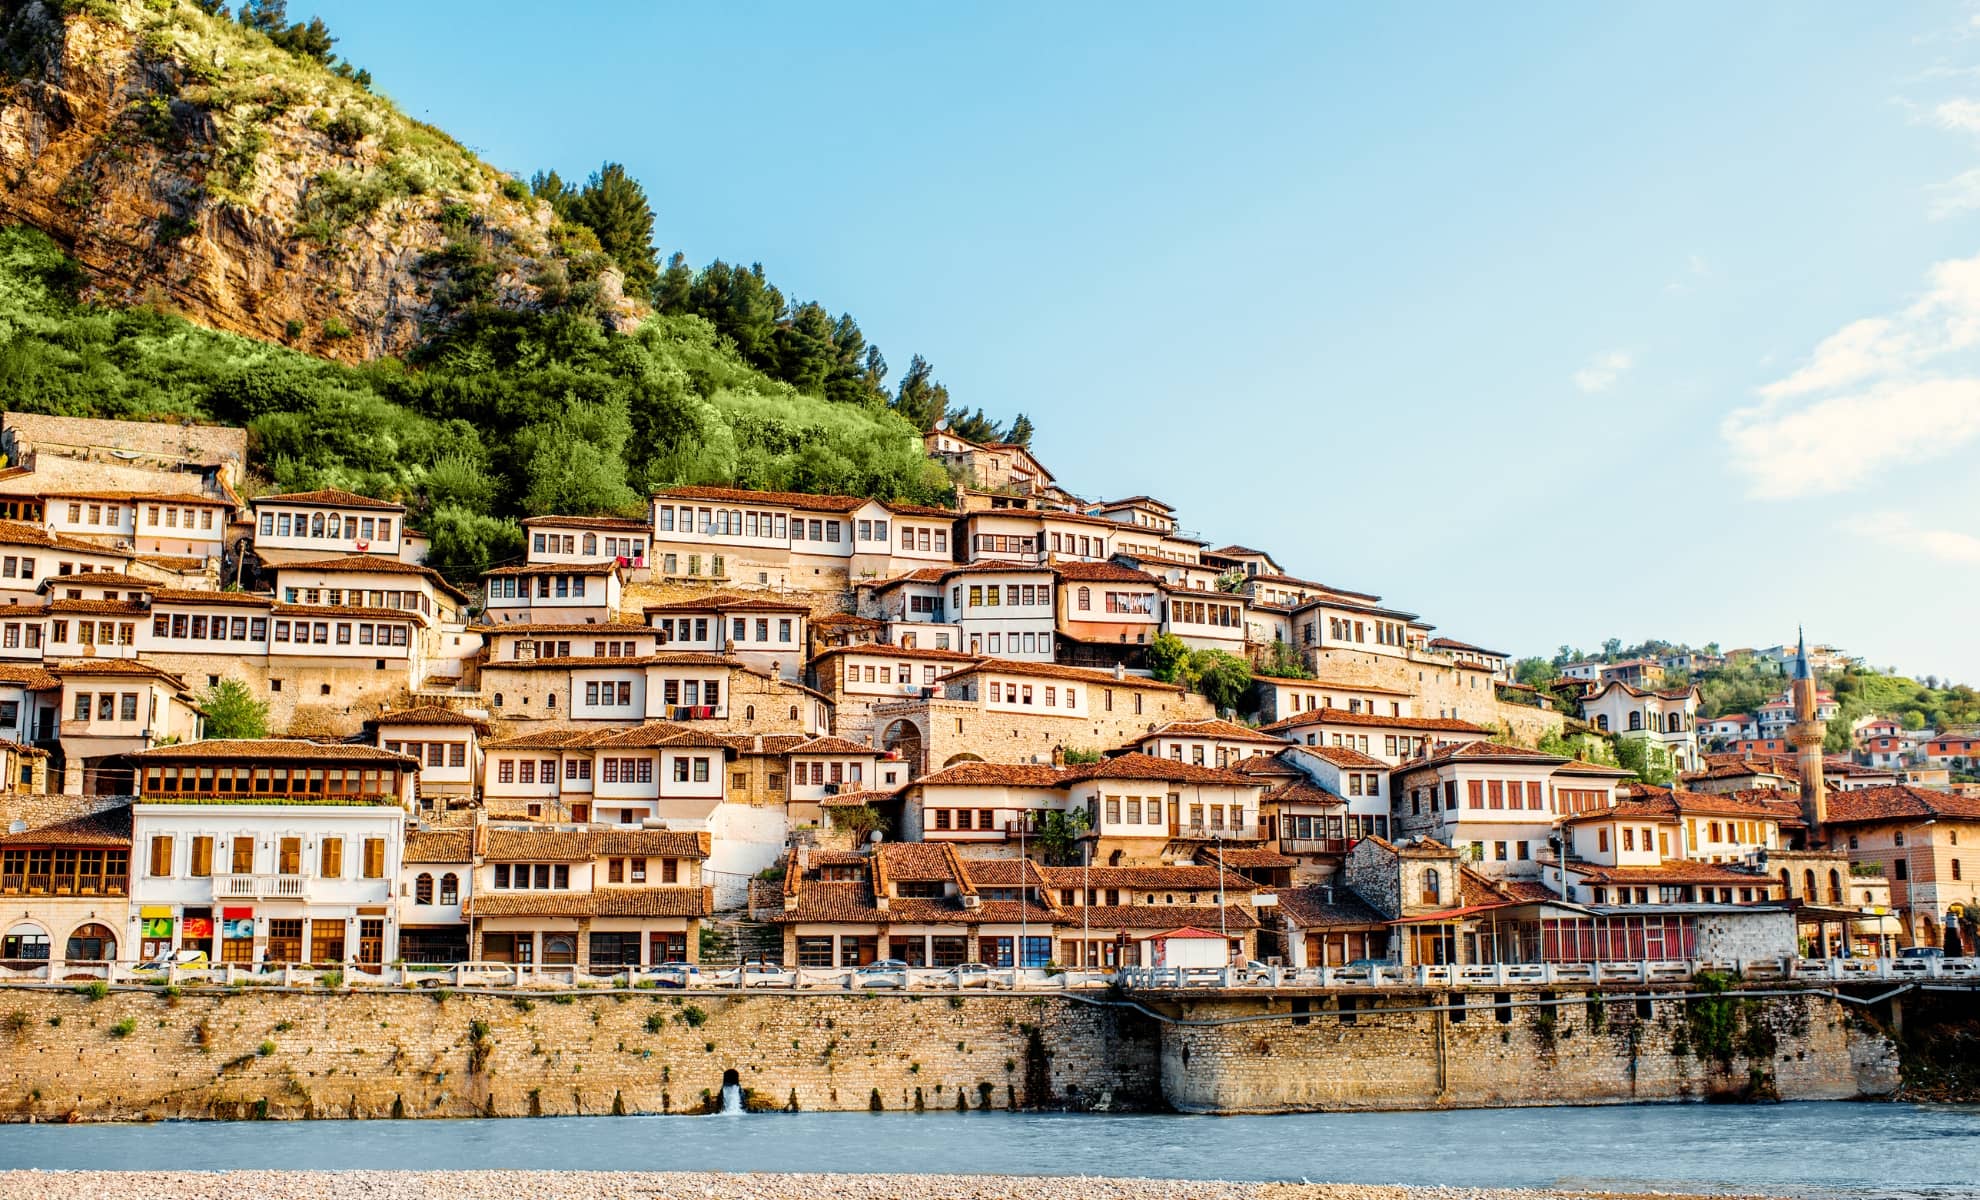 Berat en Albanie